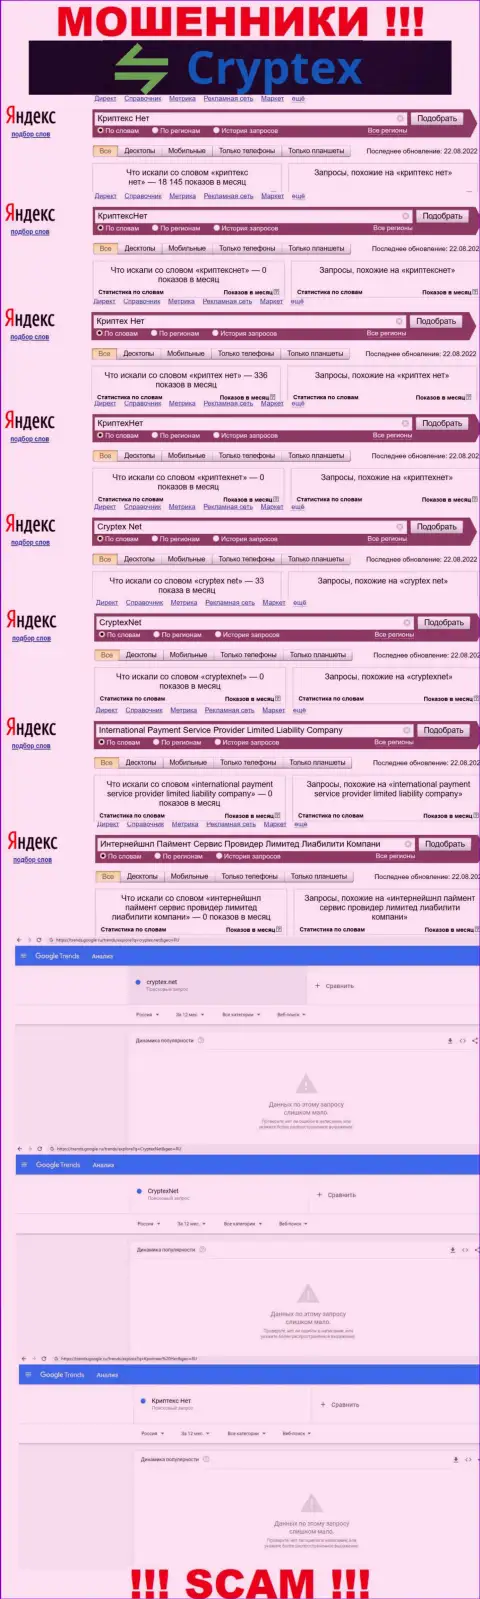 Скрин статистических сведений online-запросов по противозаконно действующей конторе Криптекс Нет